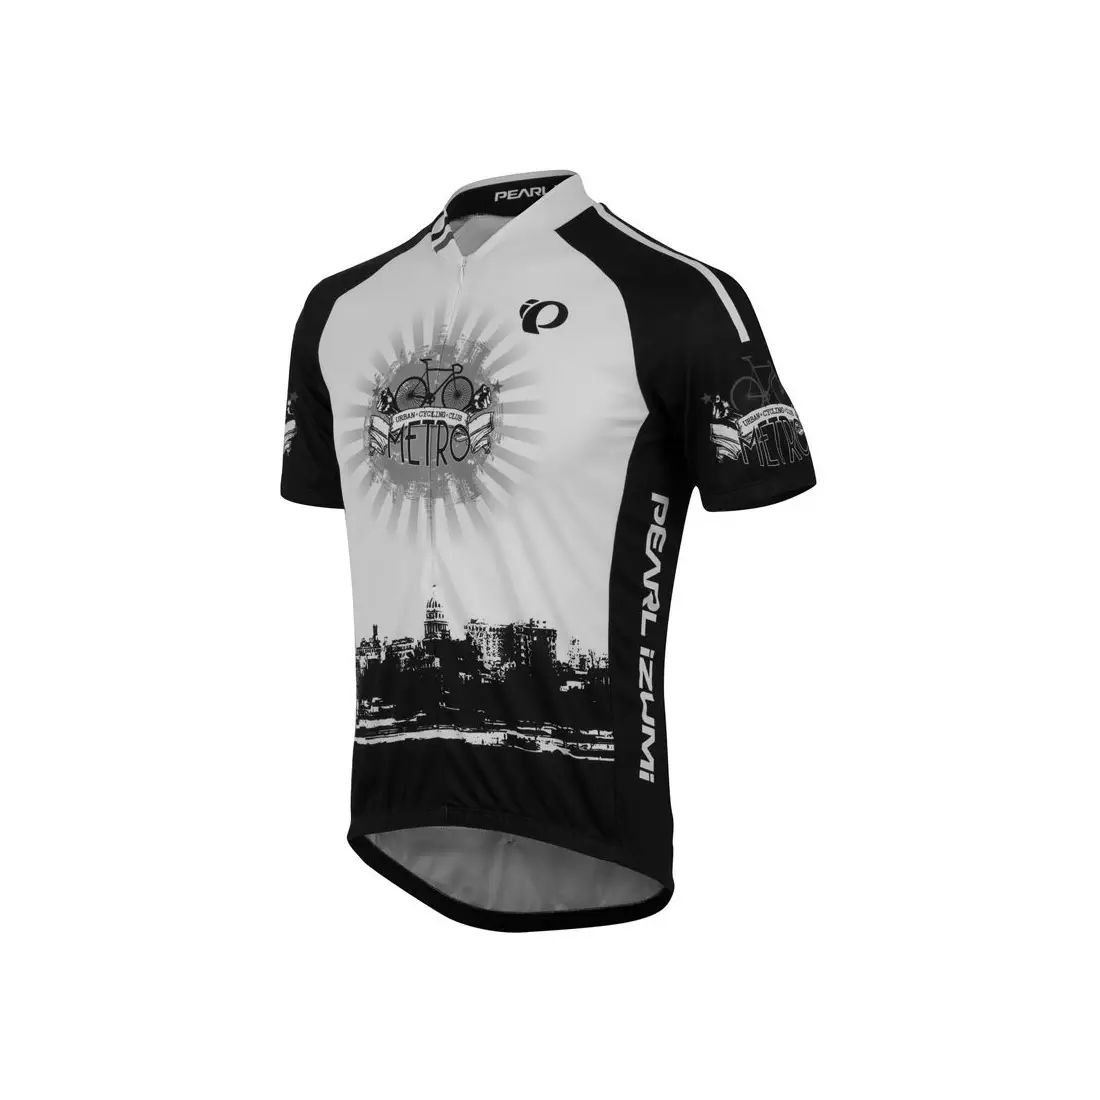 PEARL IZUMI - 0705-4IY SELECT LTD - pánský cyklistický dres, barva: Bílá a černá